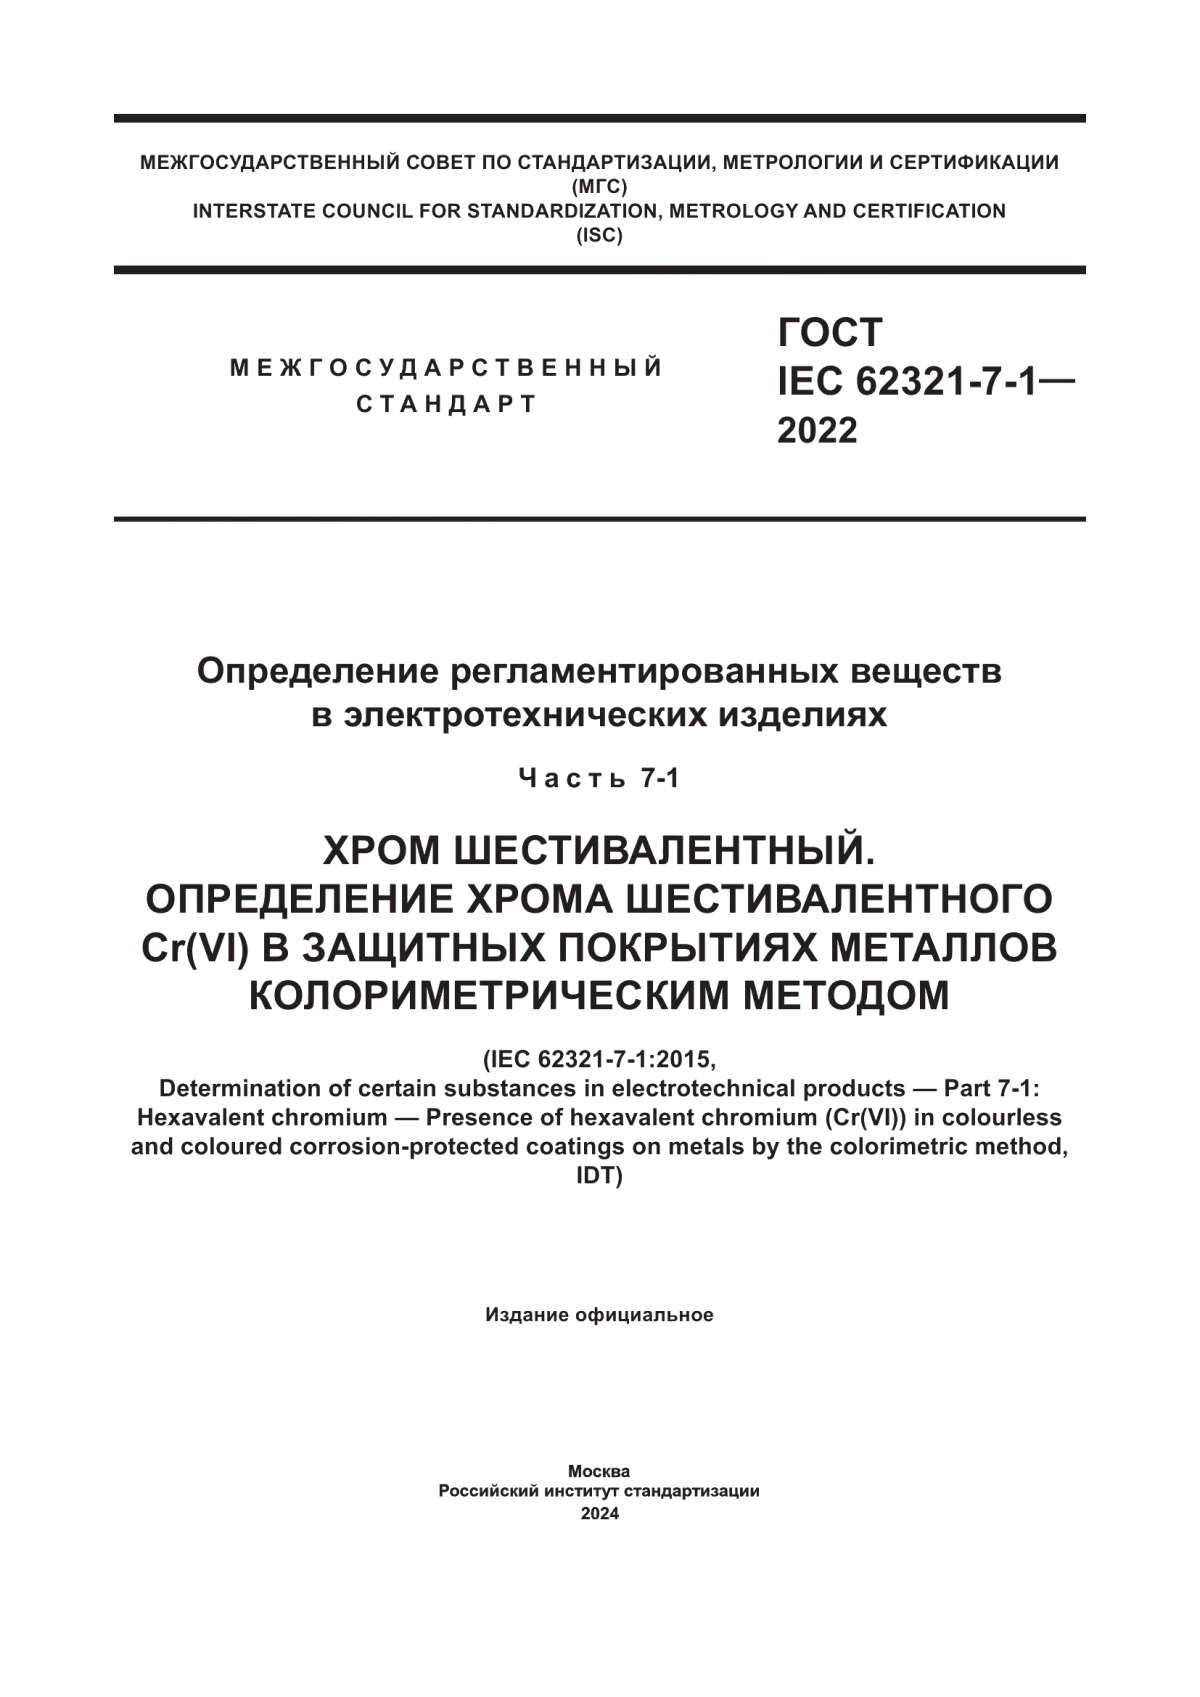 ГОСТ IEC 62321-7-1-2022 Определение регламентированных веществ в электротехнических изделиях. Часть 7-1. Хром шестивалентный. Определение хрома шестивалентного Cr(VI) в защитных покрытиях металлов колориметрическим методом